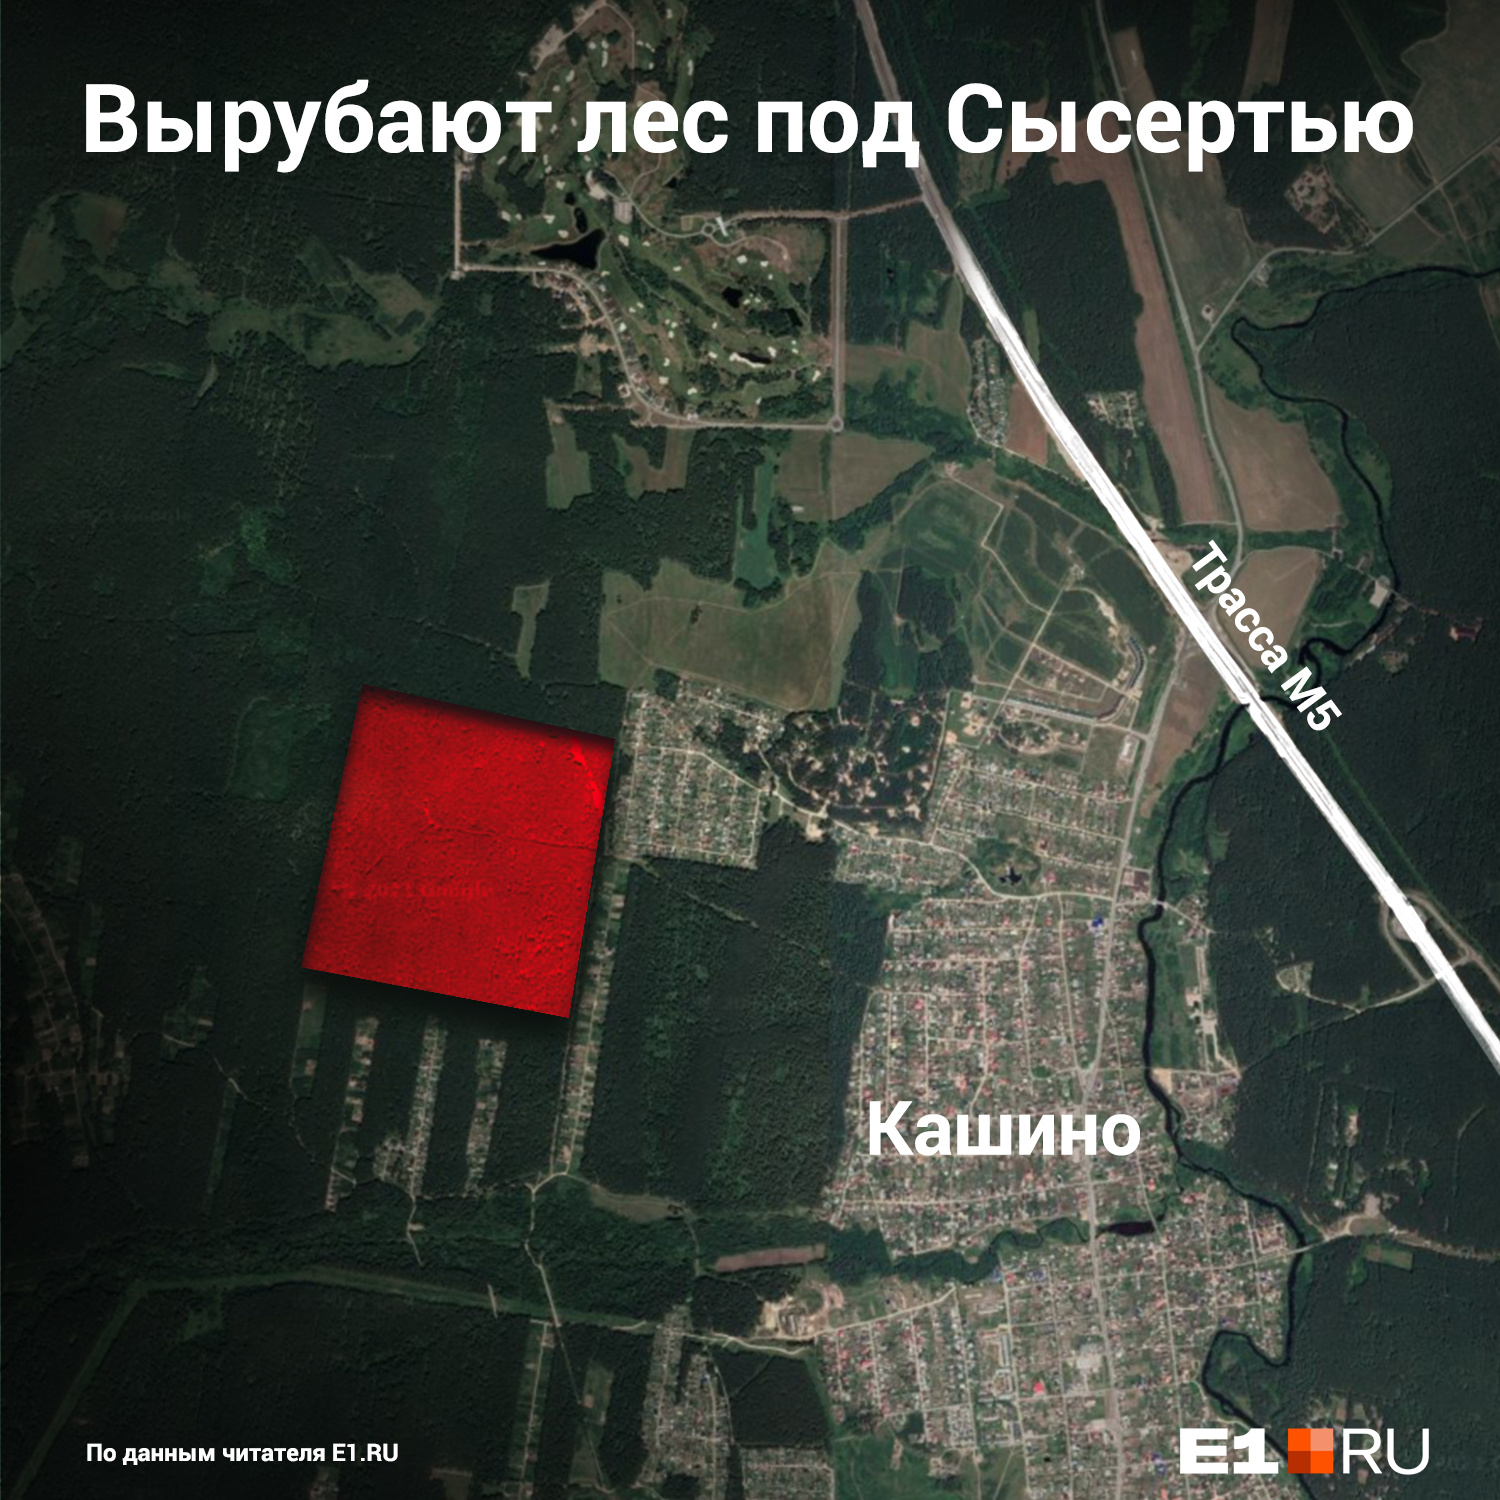 Вырубка леса идет на участке, обозначенном красным квадратом